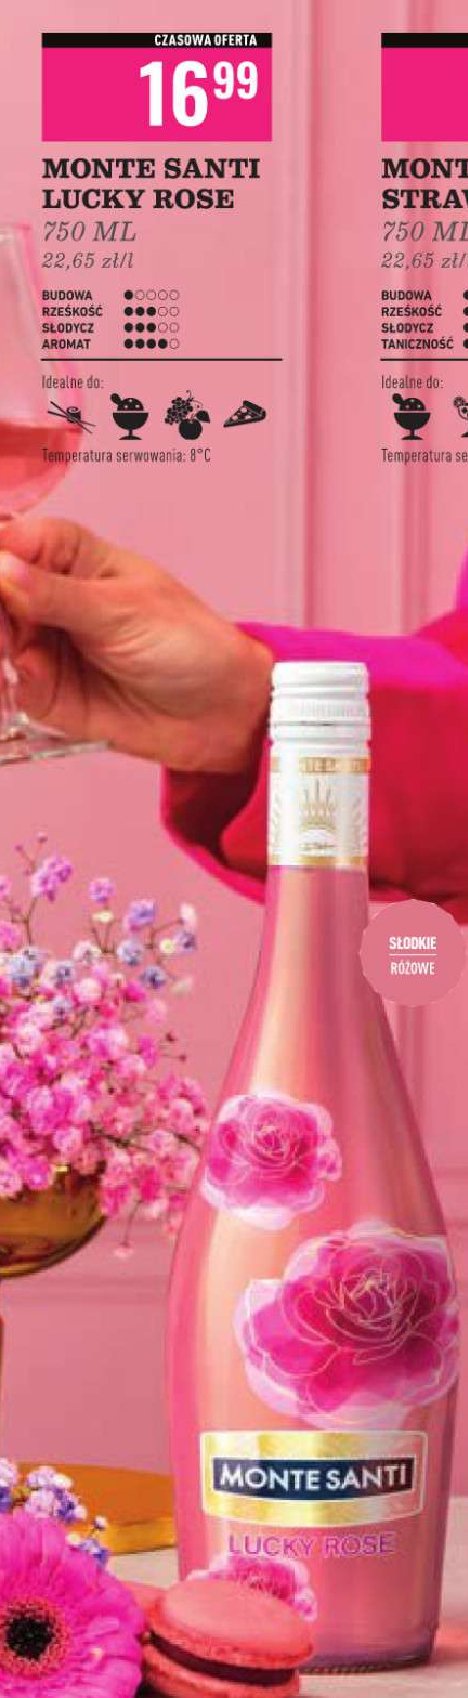 Wino Monte santi lucky rose promocja